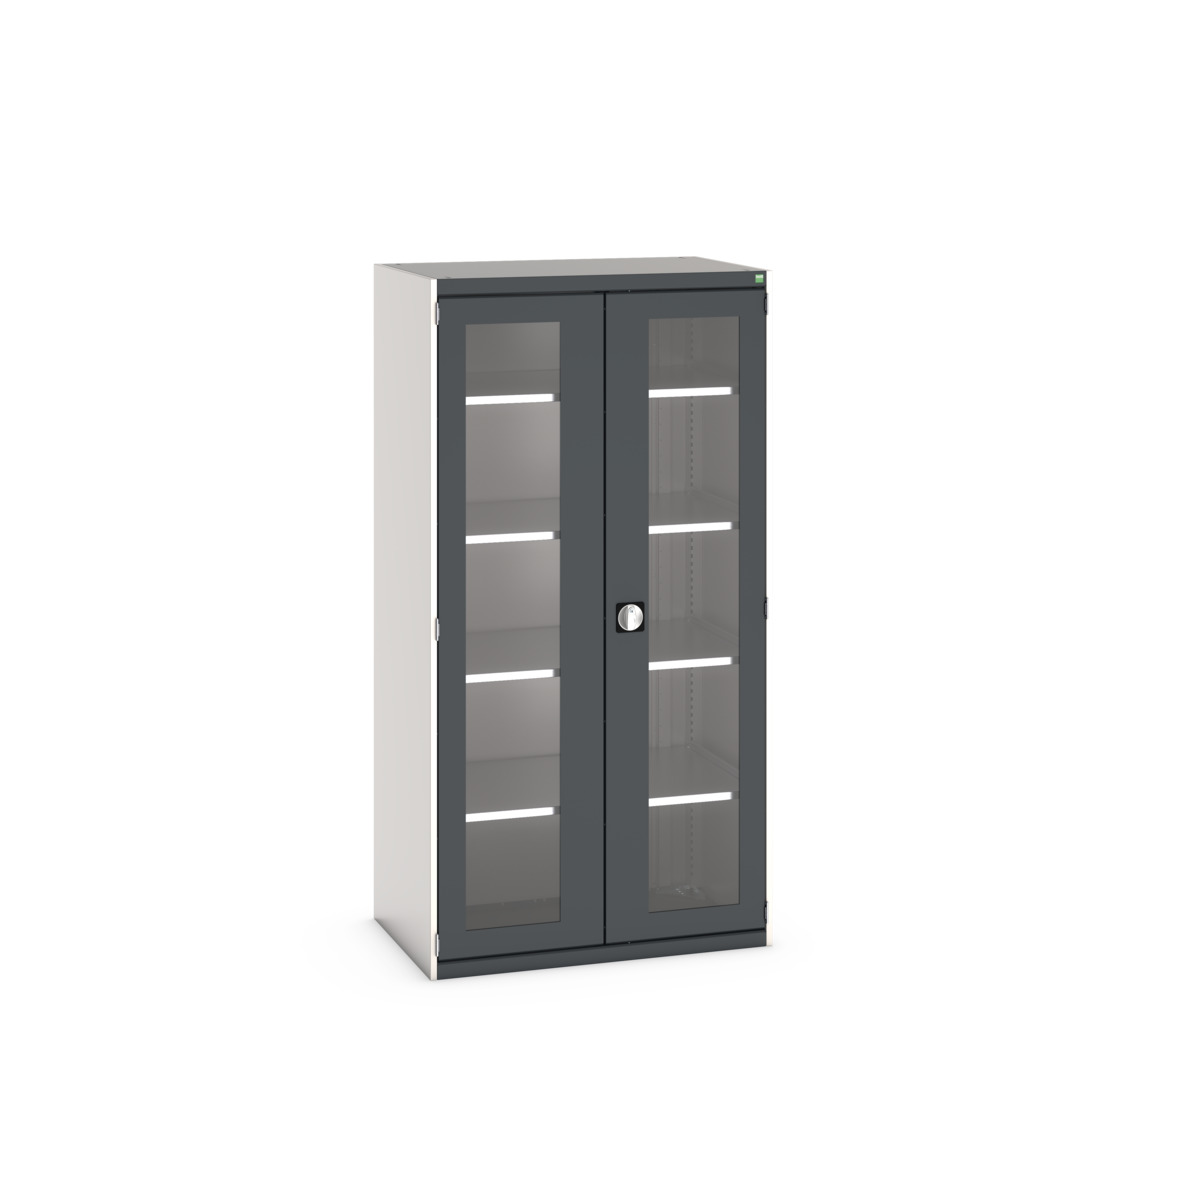 40021134.19V - cubio cupboard